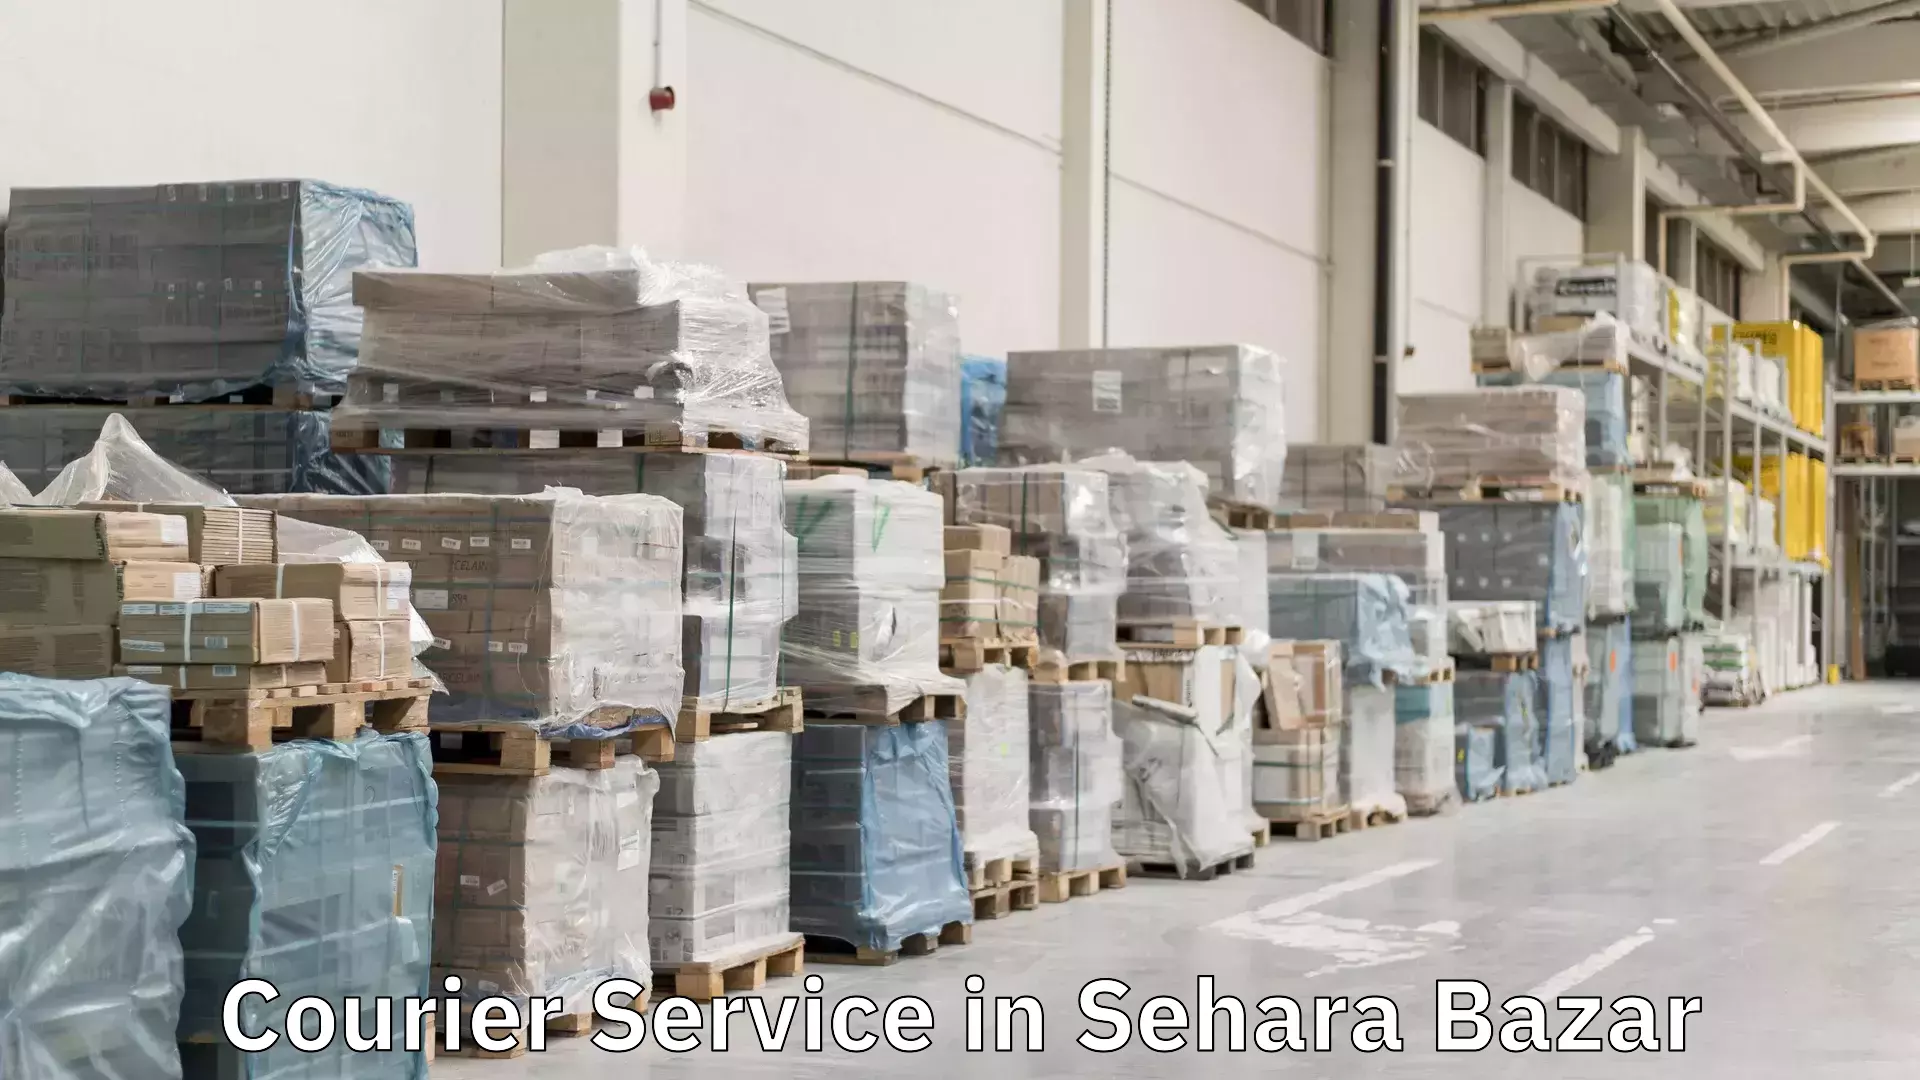 Express package handling in Sehara Bazar